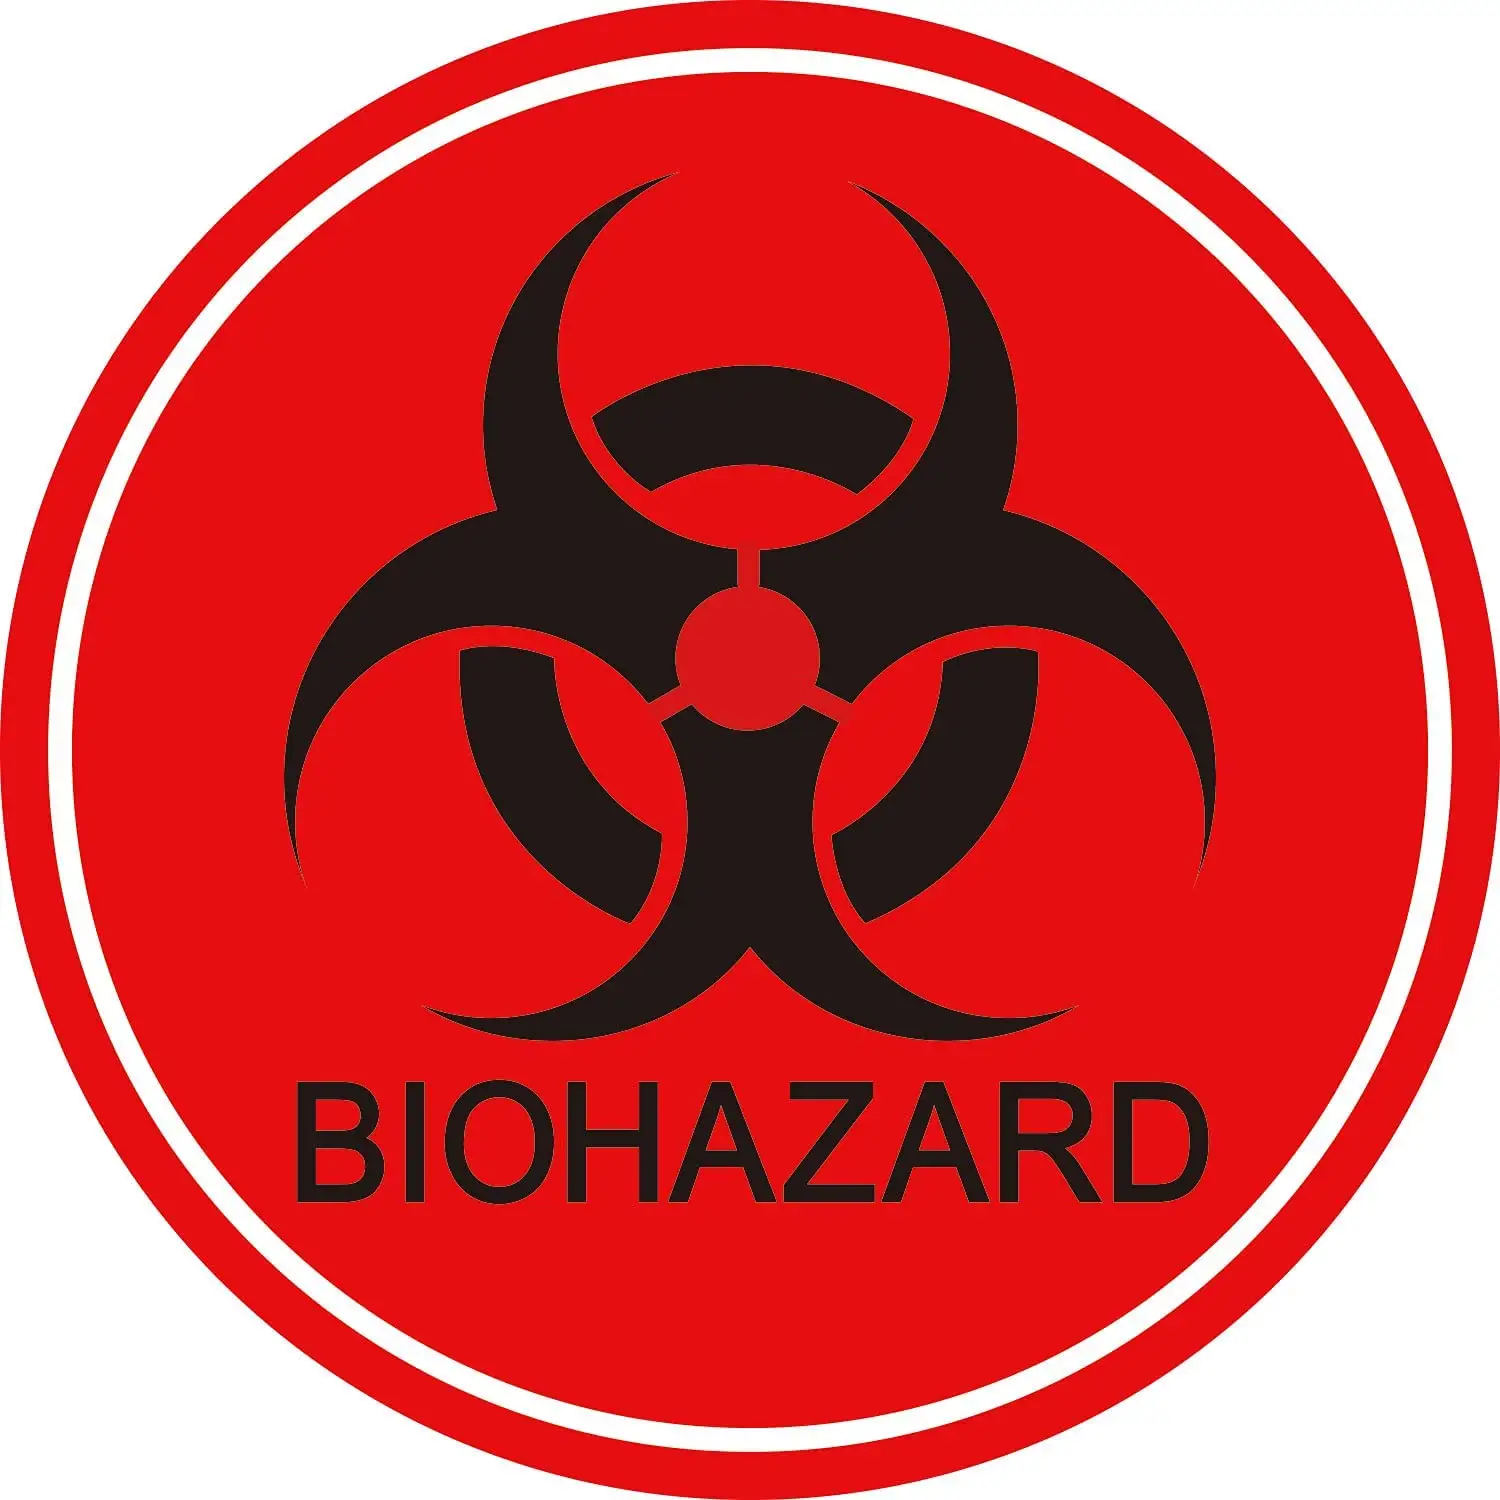 Pegatinas de advertencia de Biohazard, calcomanías de señal de Biohazard redondas rojas para laboratorios, hospitales y uso Industrial